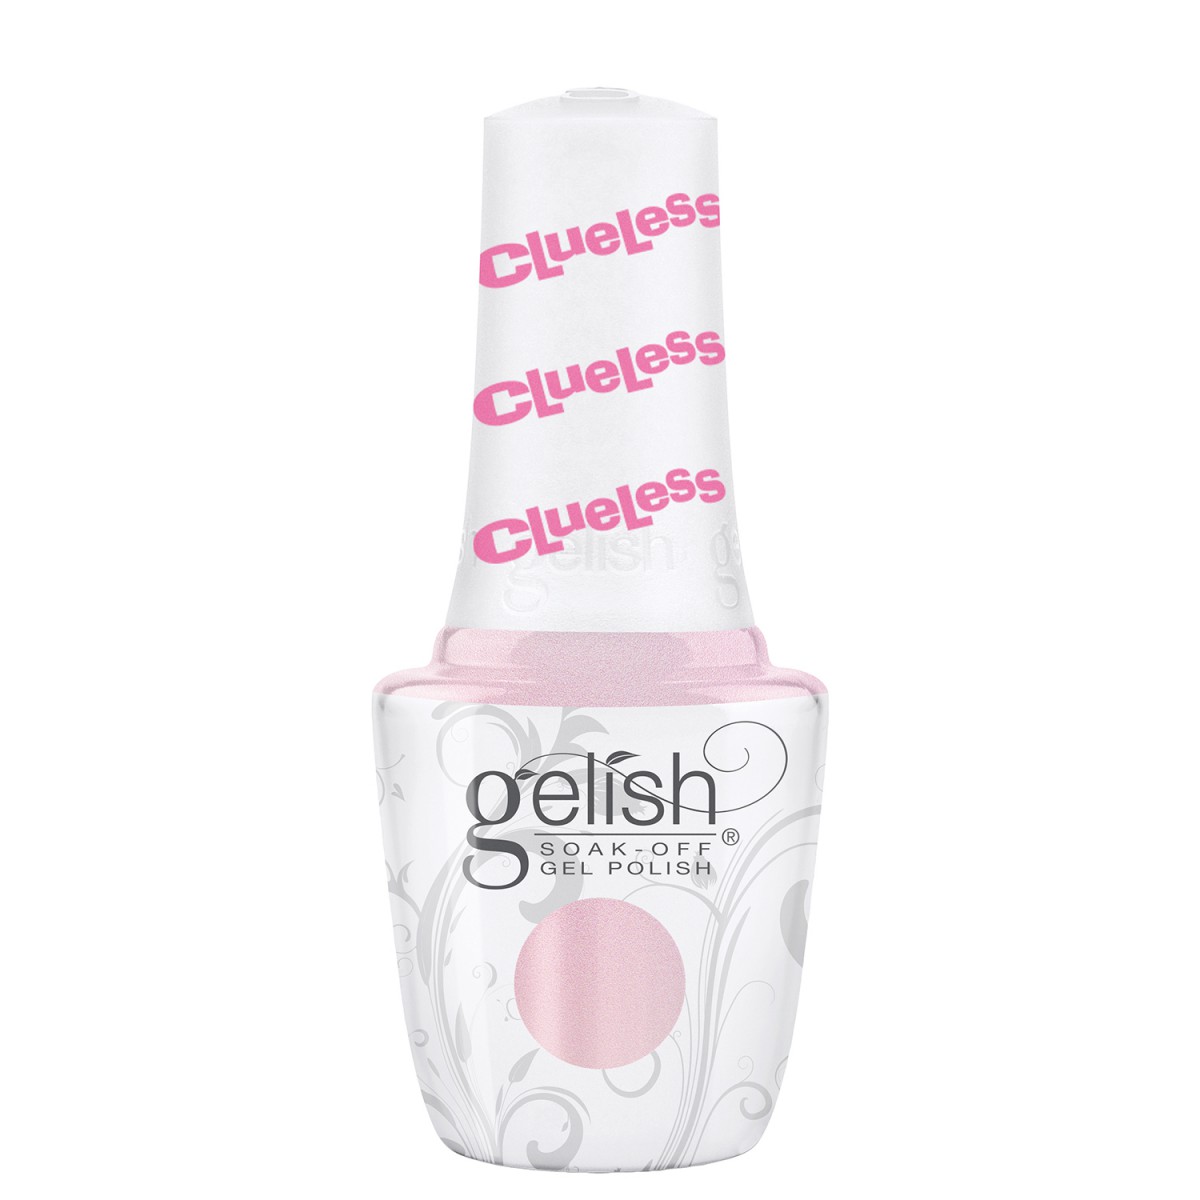 Gelish Highly selective 15 ml